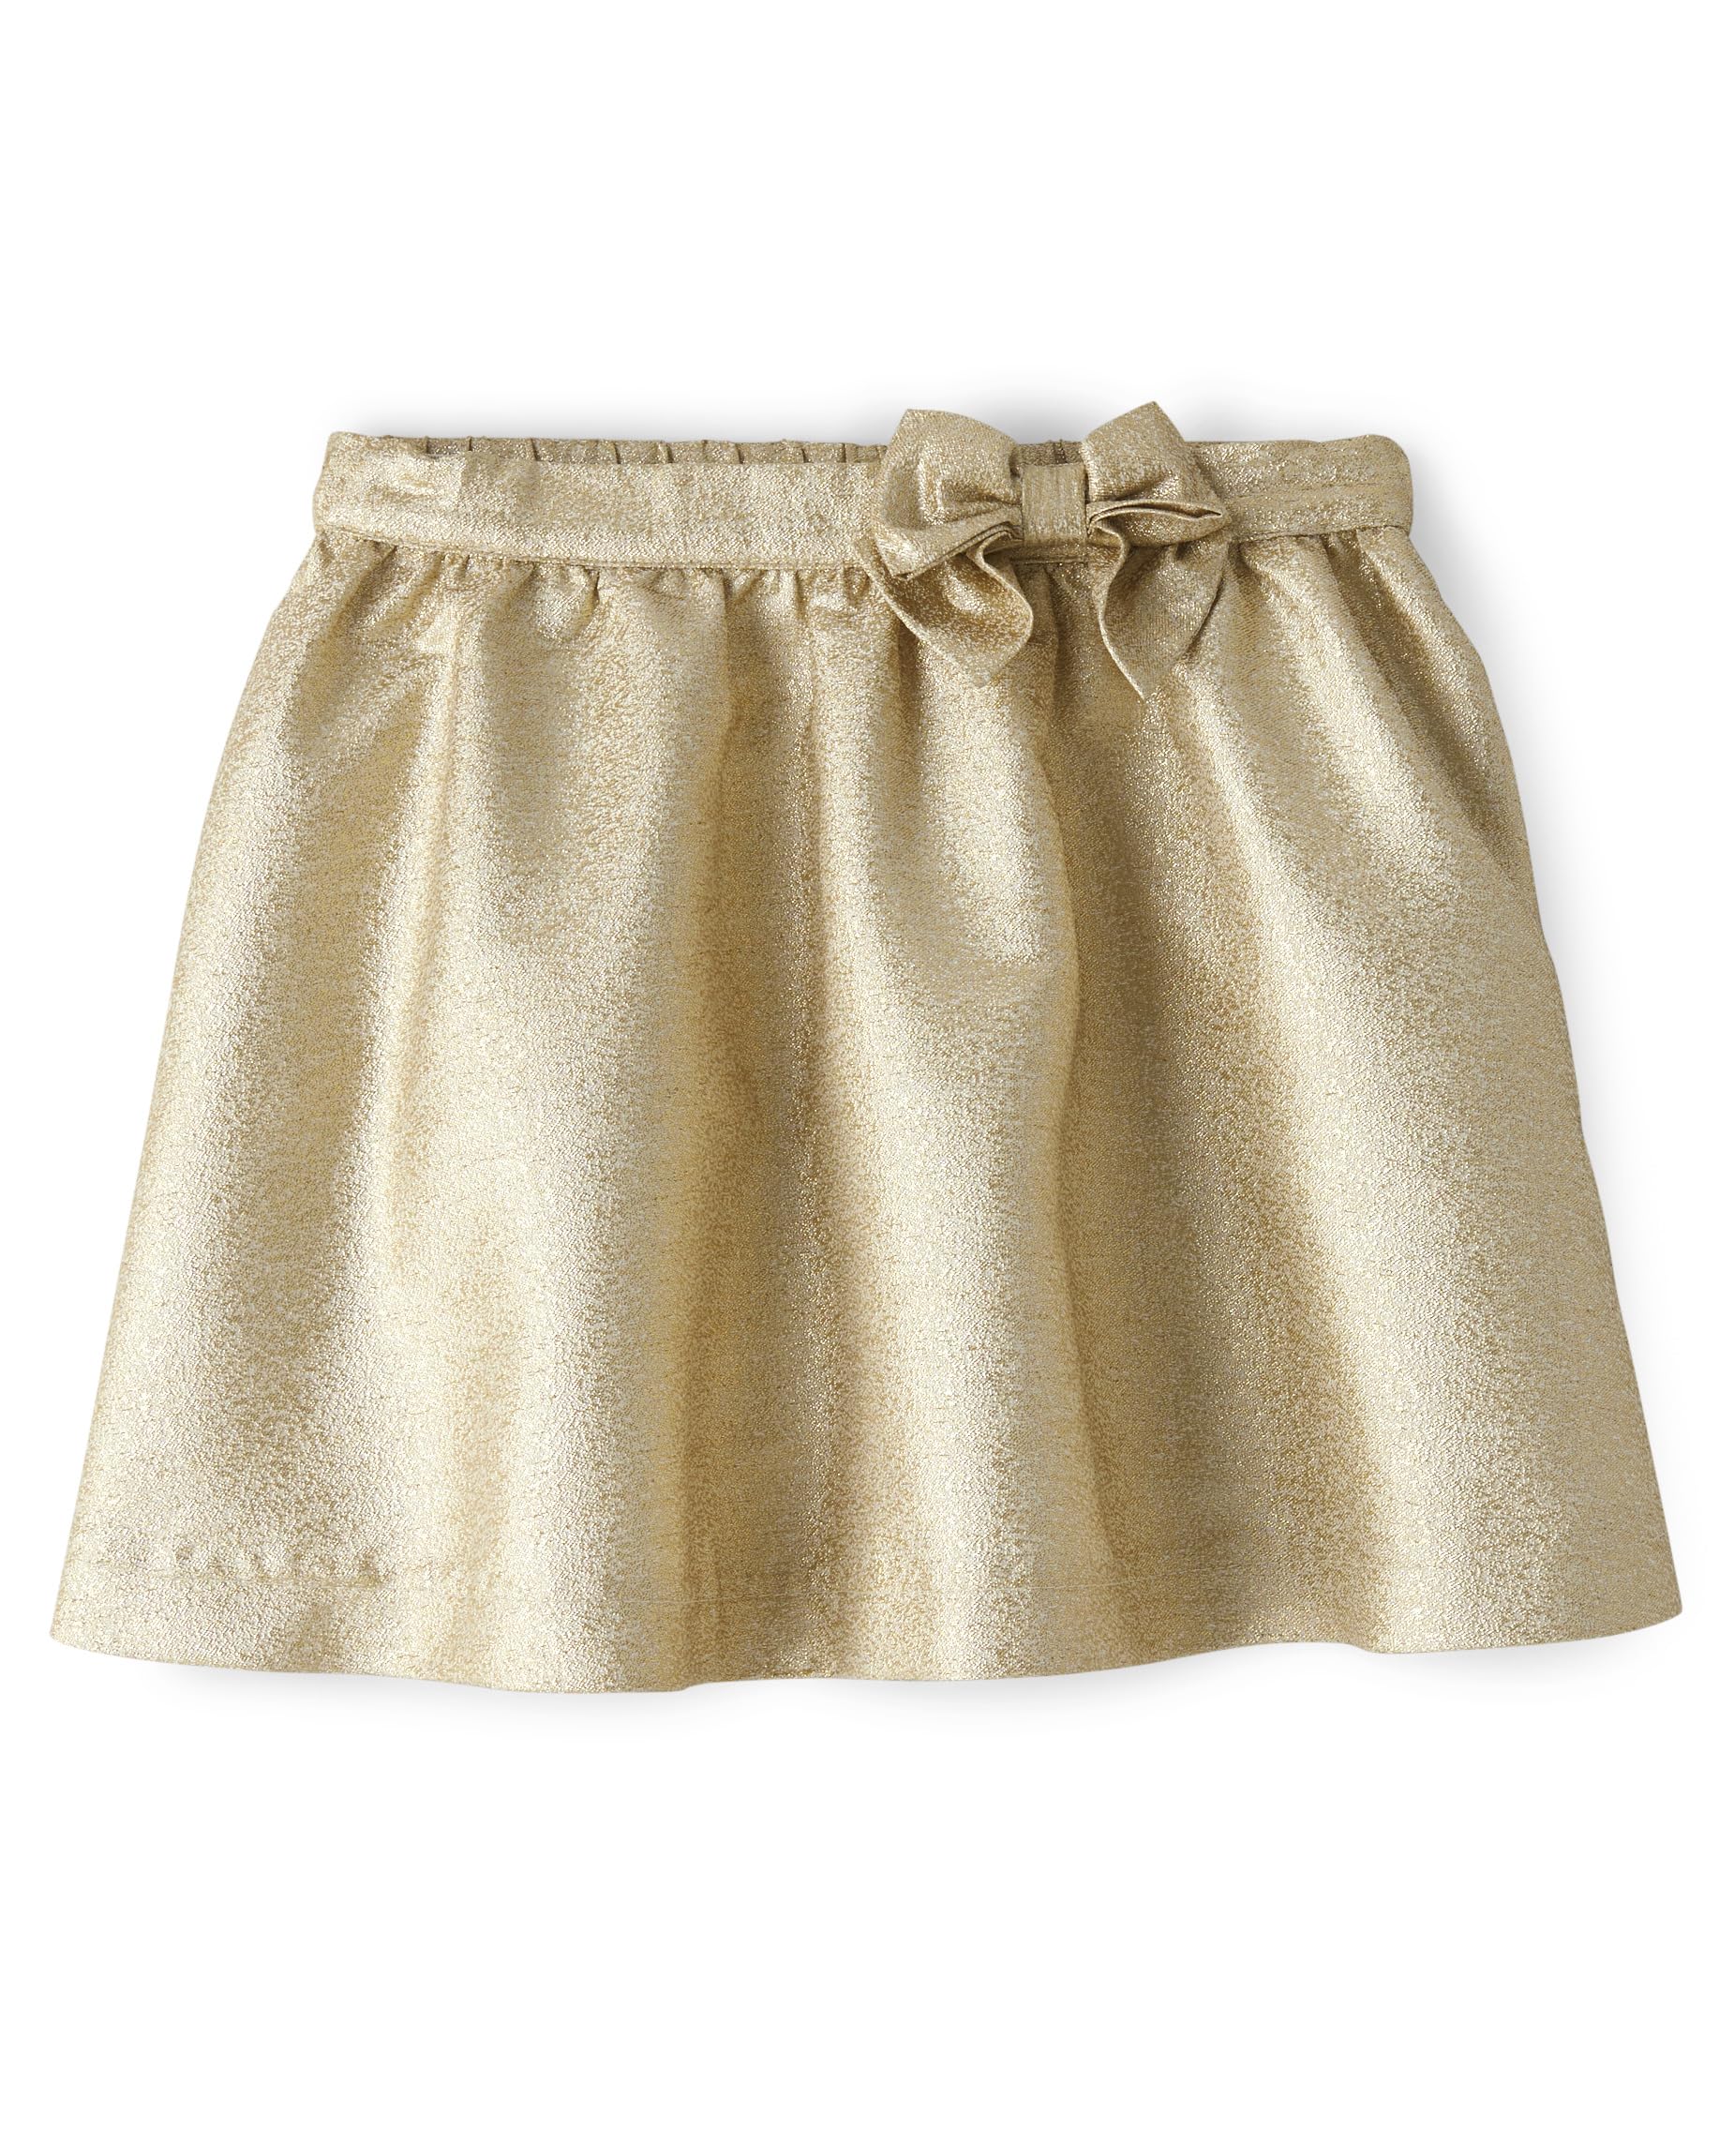 Gymboree Toddler Girls Fashion Skirts Seasonal